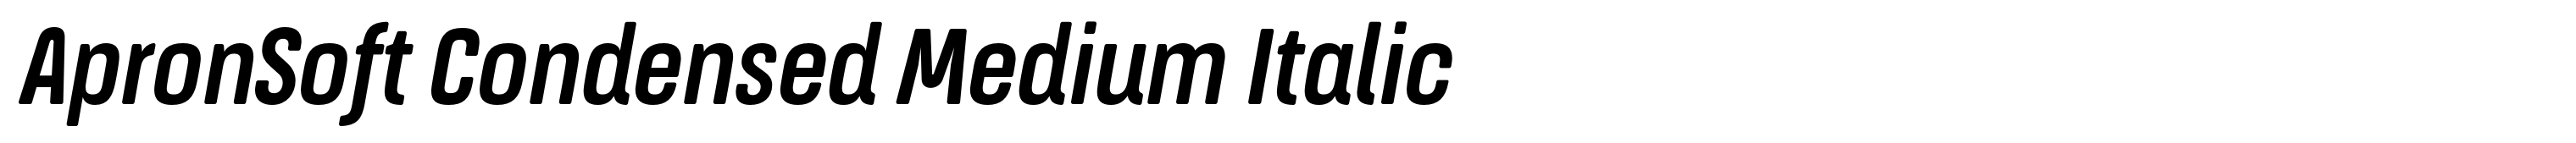 ApronSoft Condensed Medium Italic